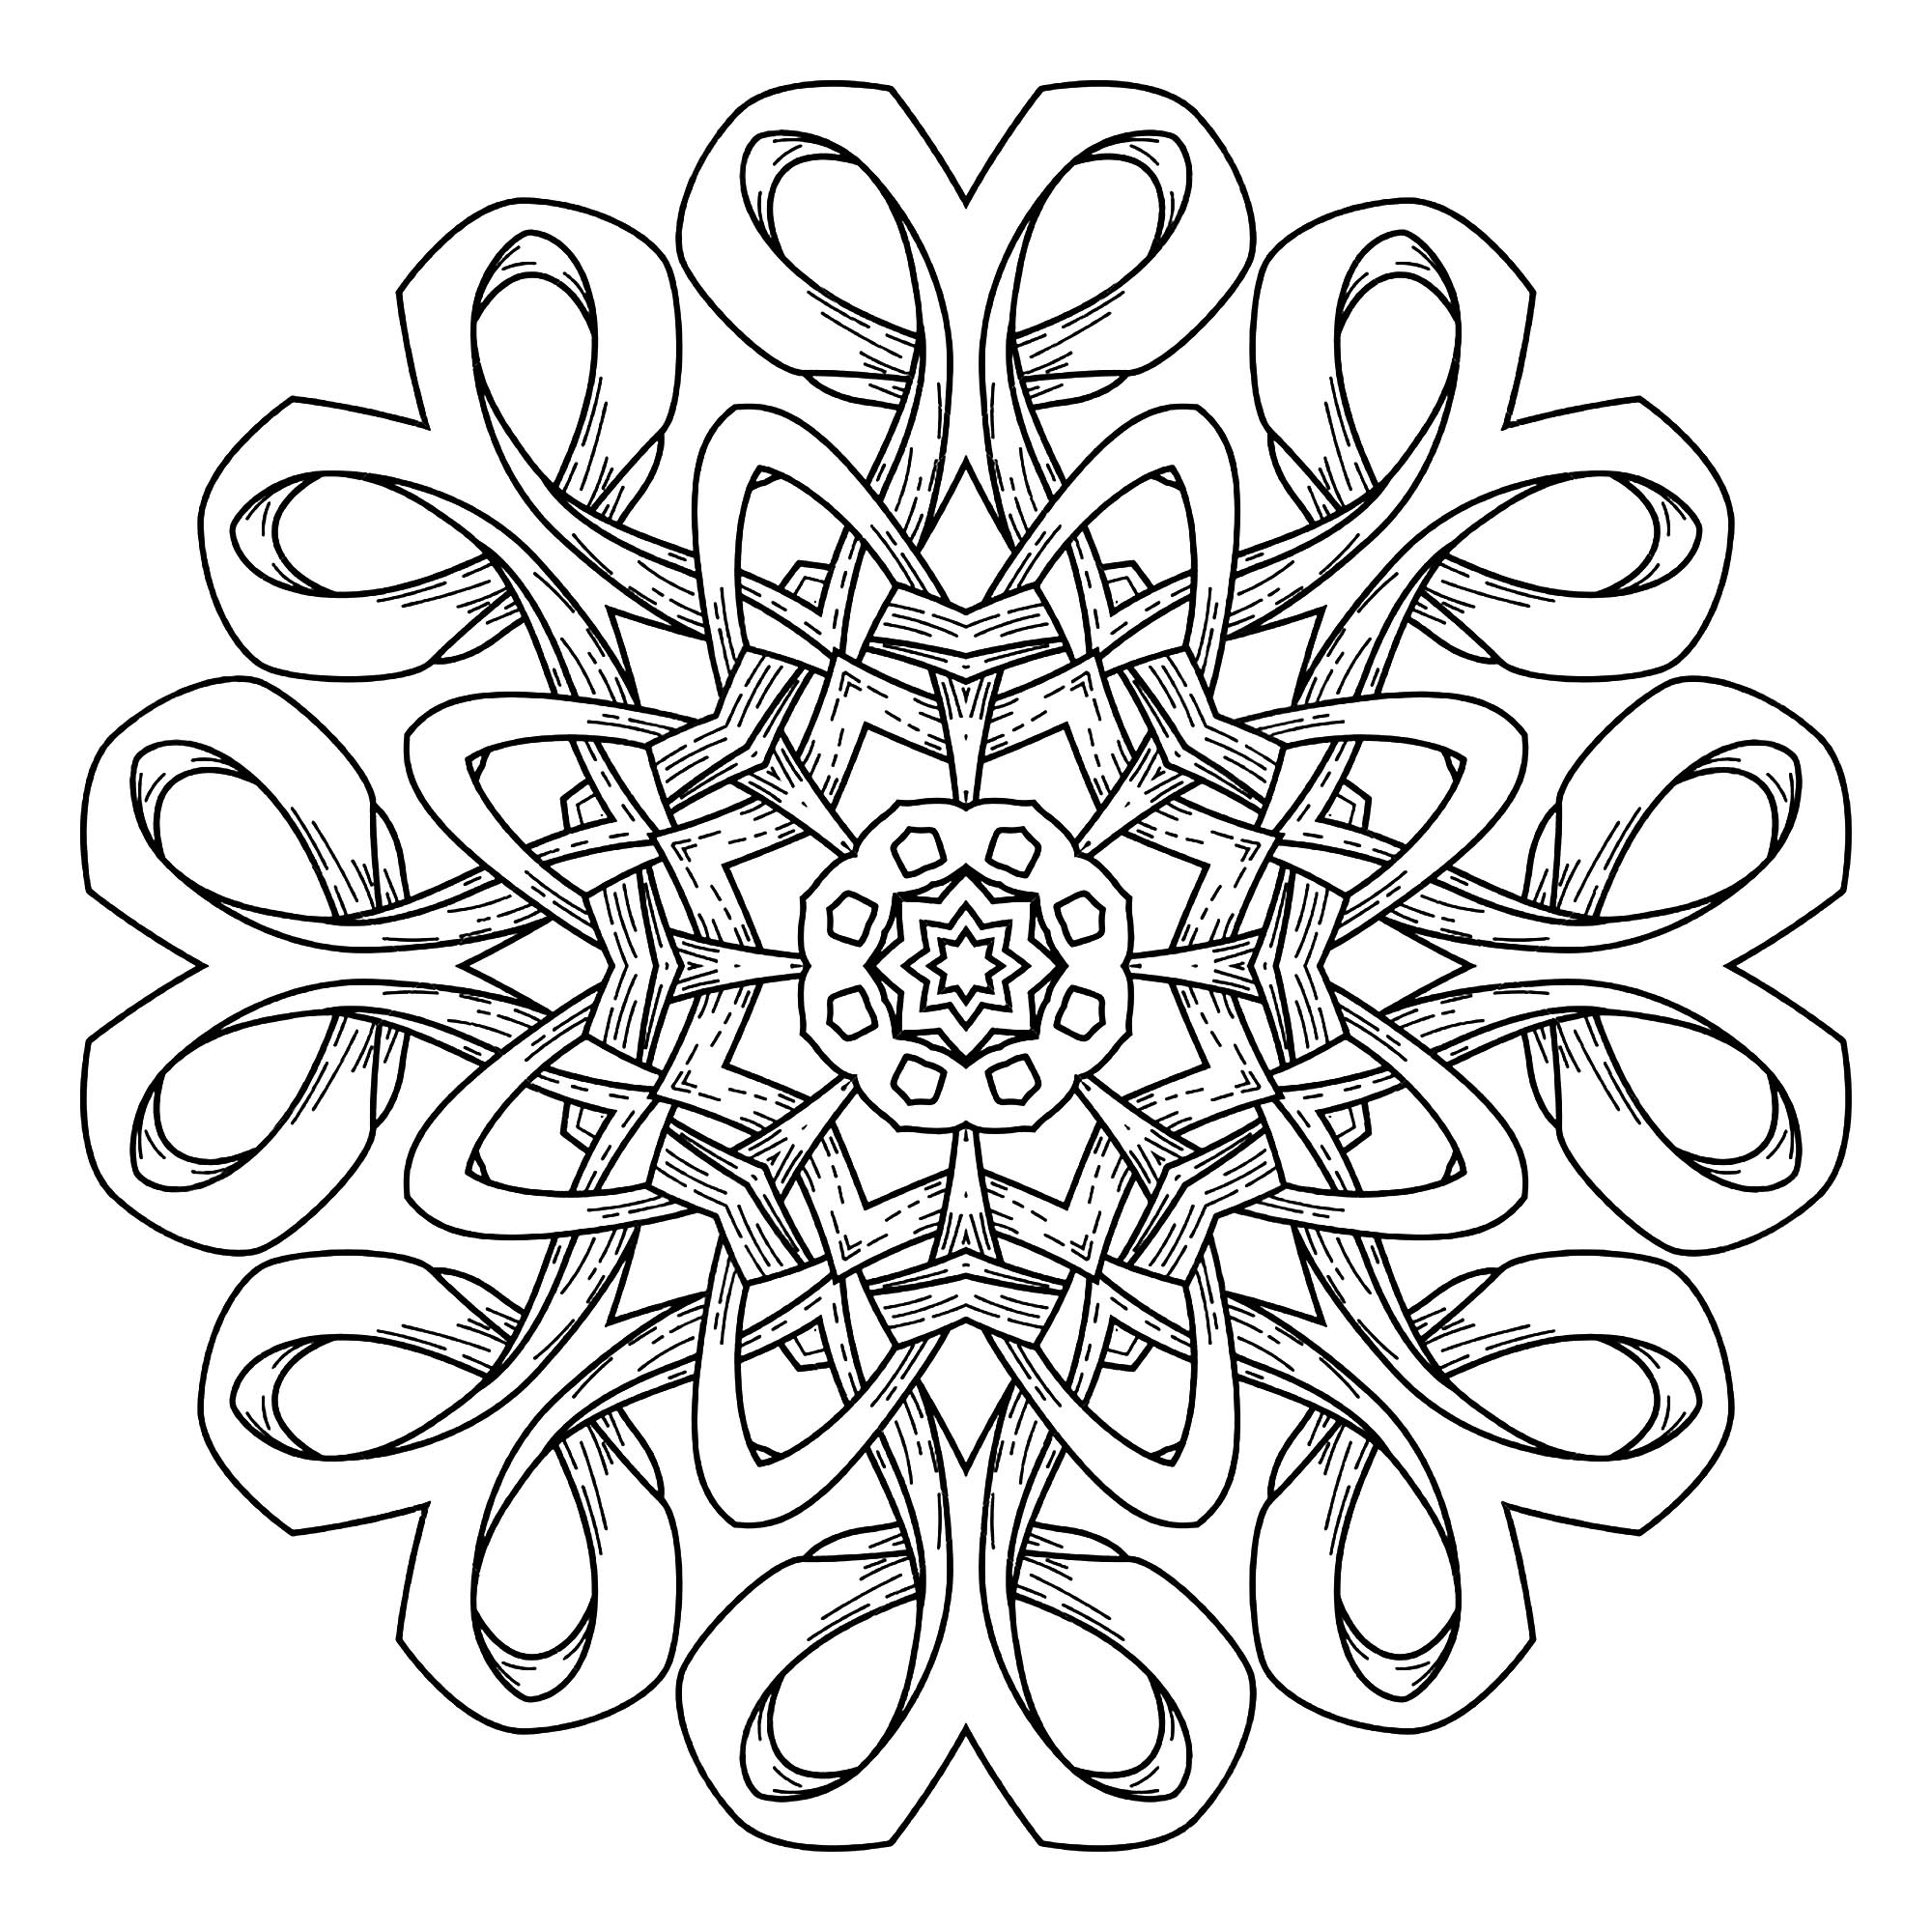 Lasciatevi trasportare da questo superbo Mandala dalle forme eleganti e armoniose. Utilizzate le tecniche che conoscete meglio per valorizzarlo.